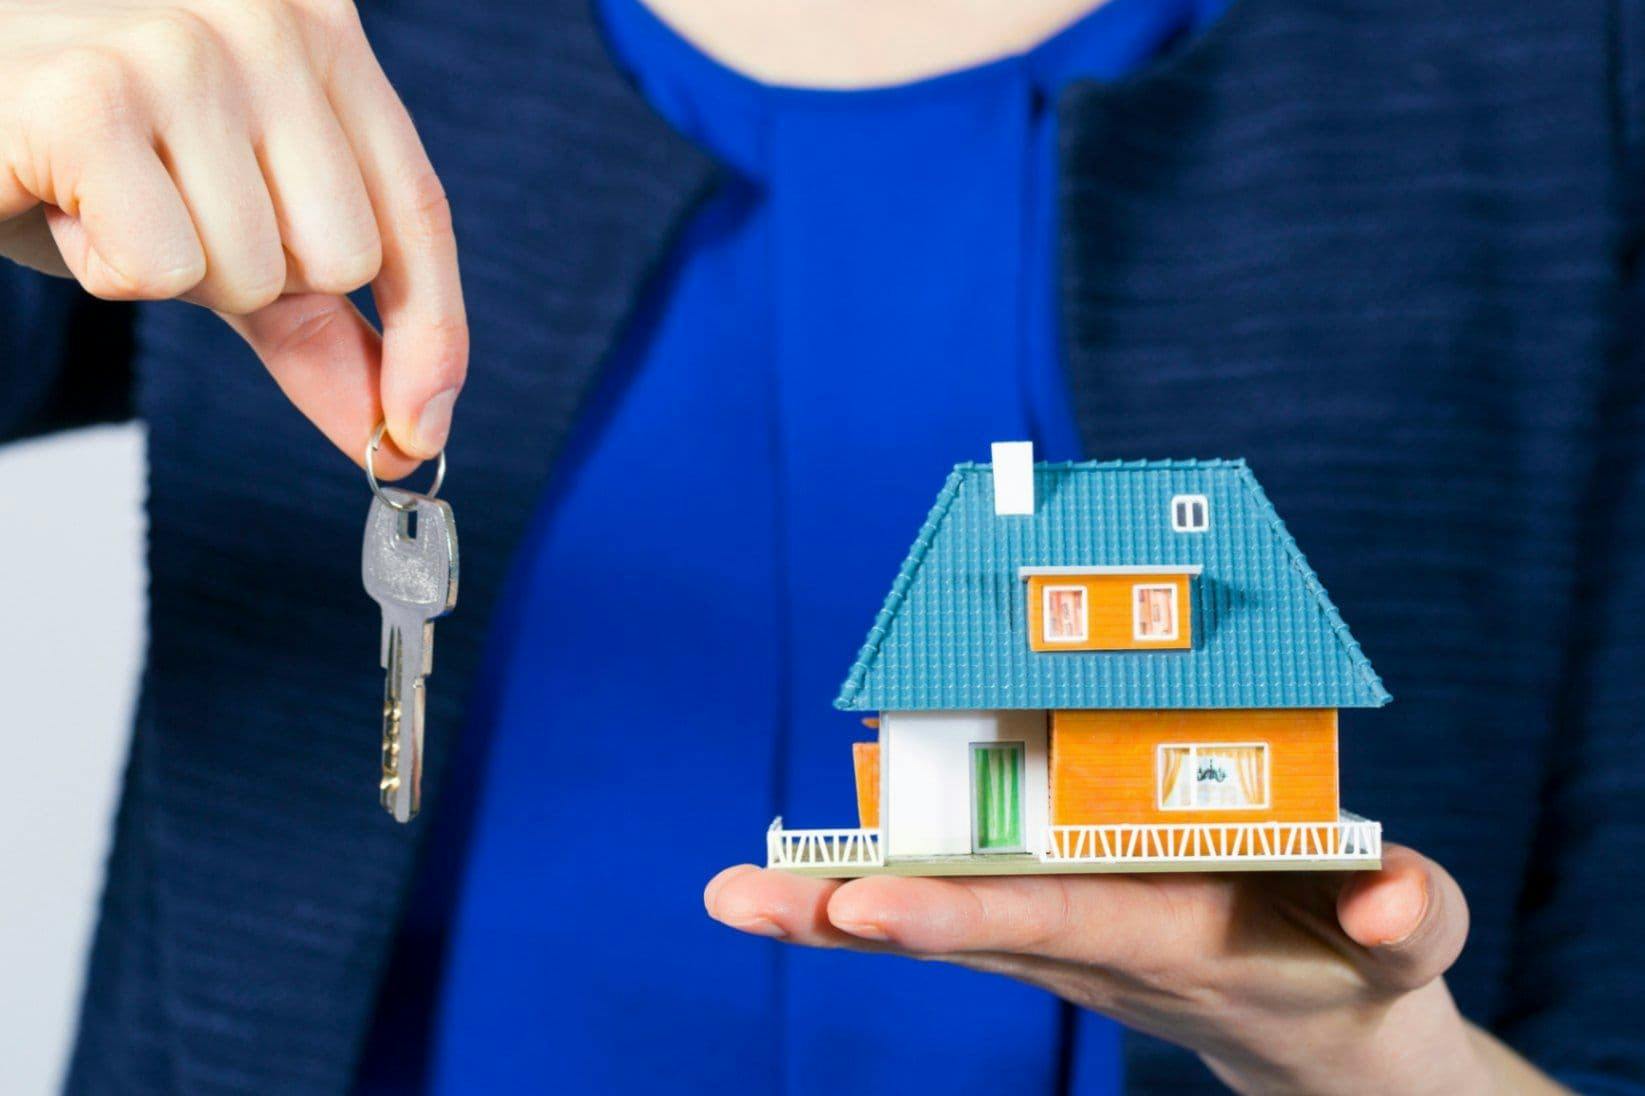 Eine Person hält in einer Hand einen Schlüssel und in der anderen Hand ein Modell Haus